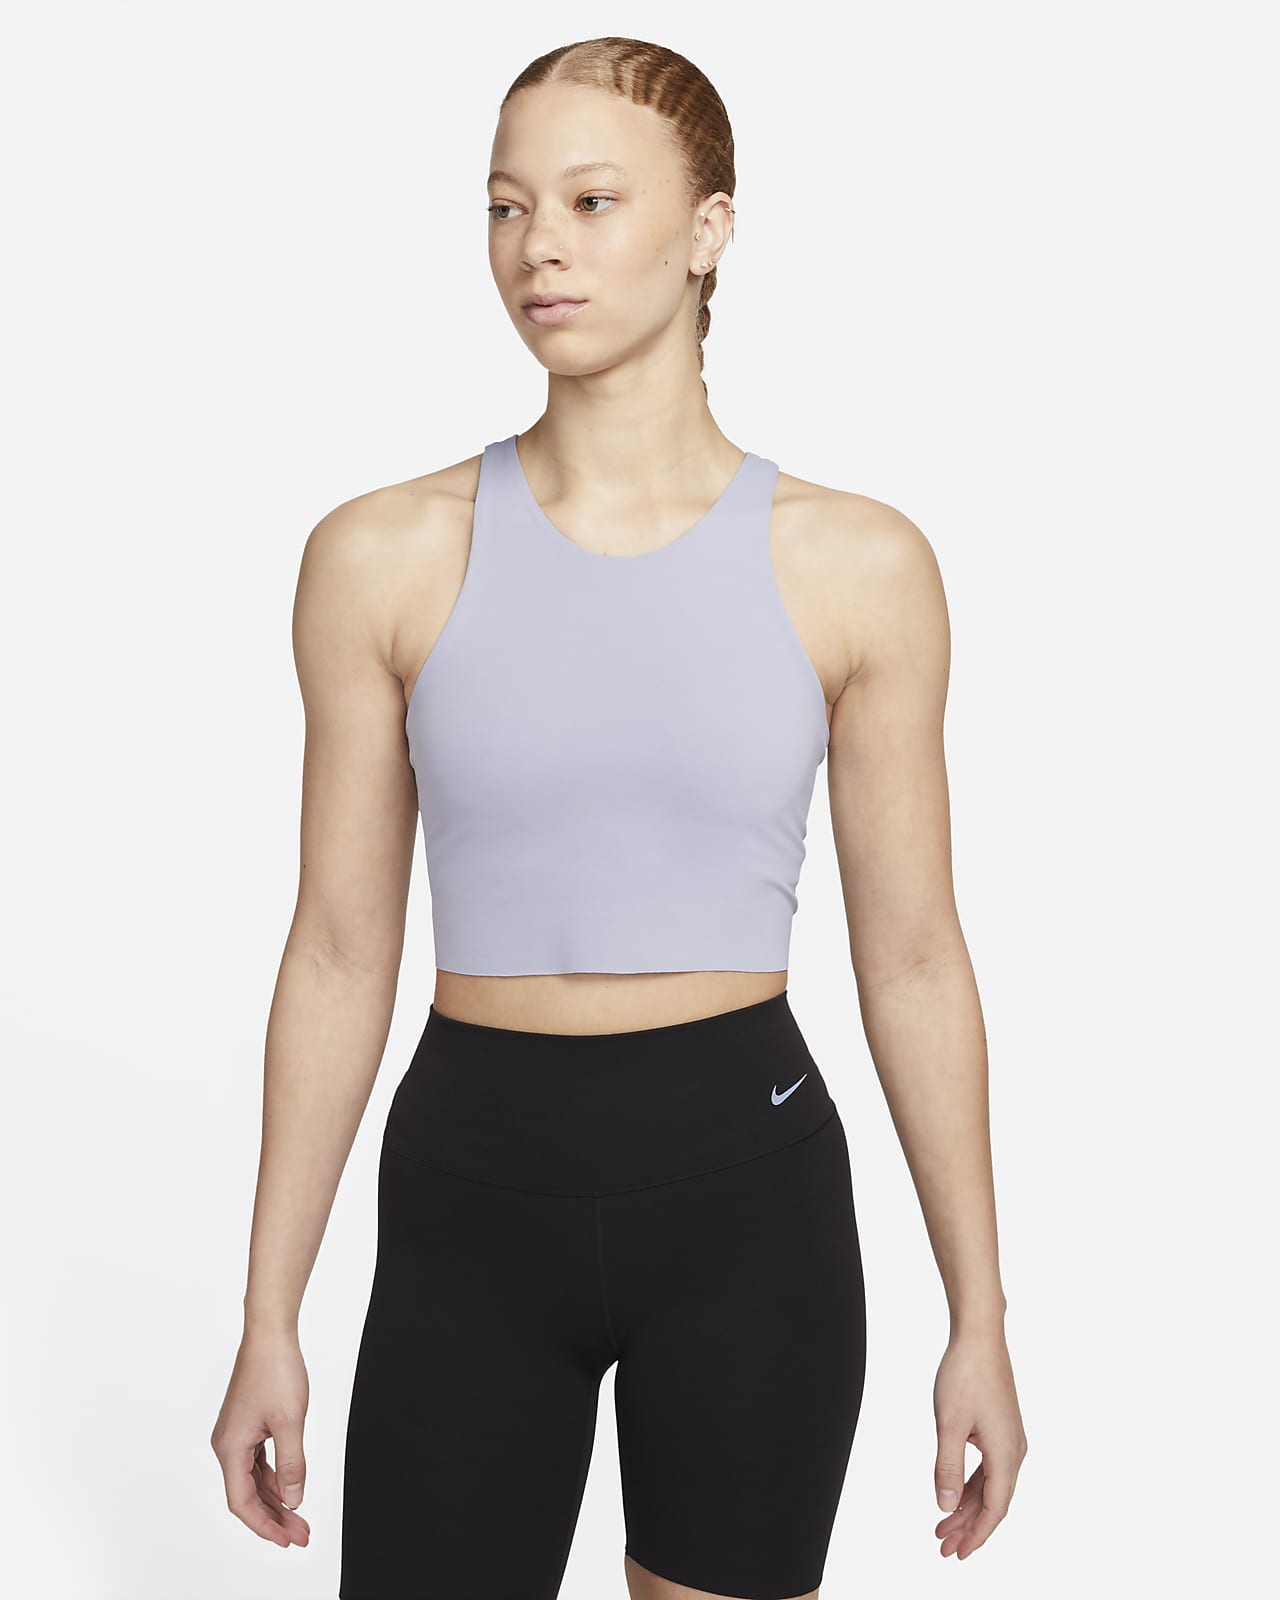 Camiseta de tirantes con bra integrado para mujer Nike Yoga Luxe. Nike.com